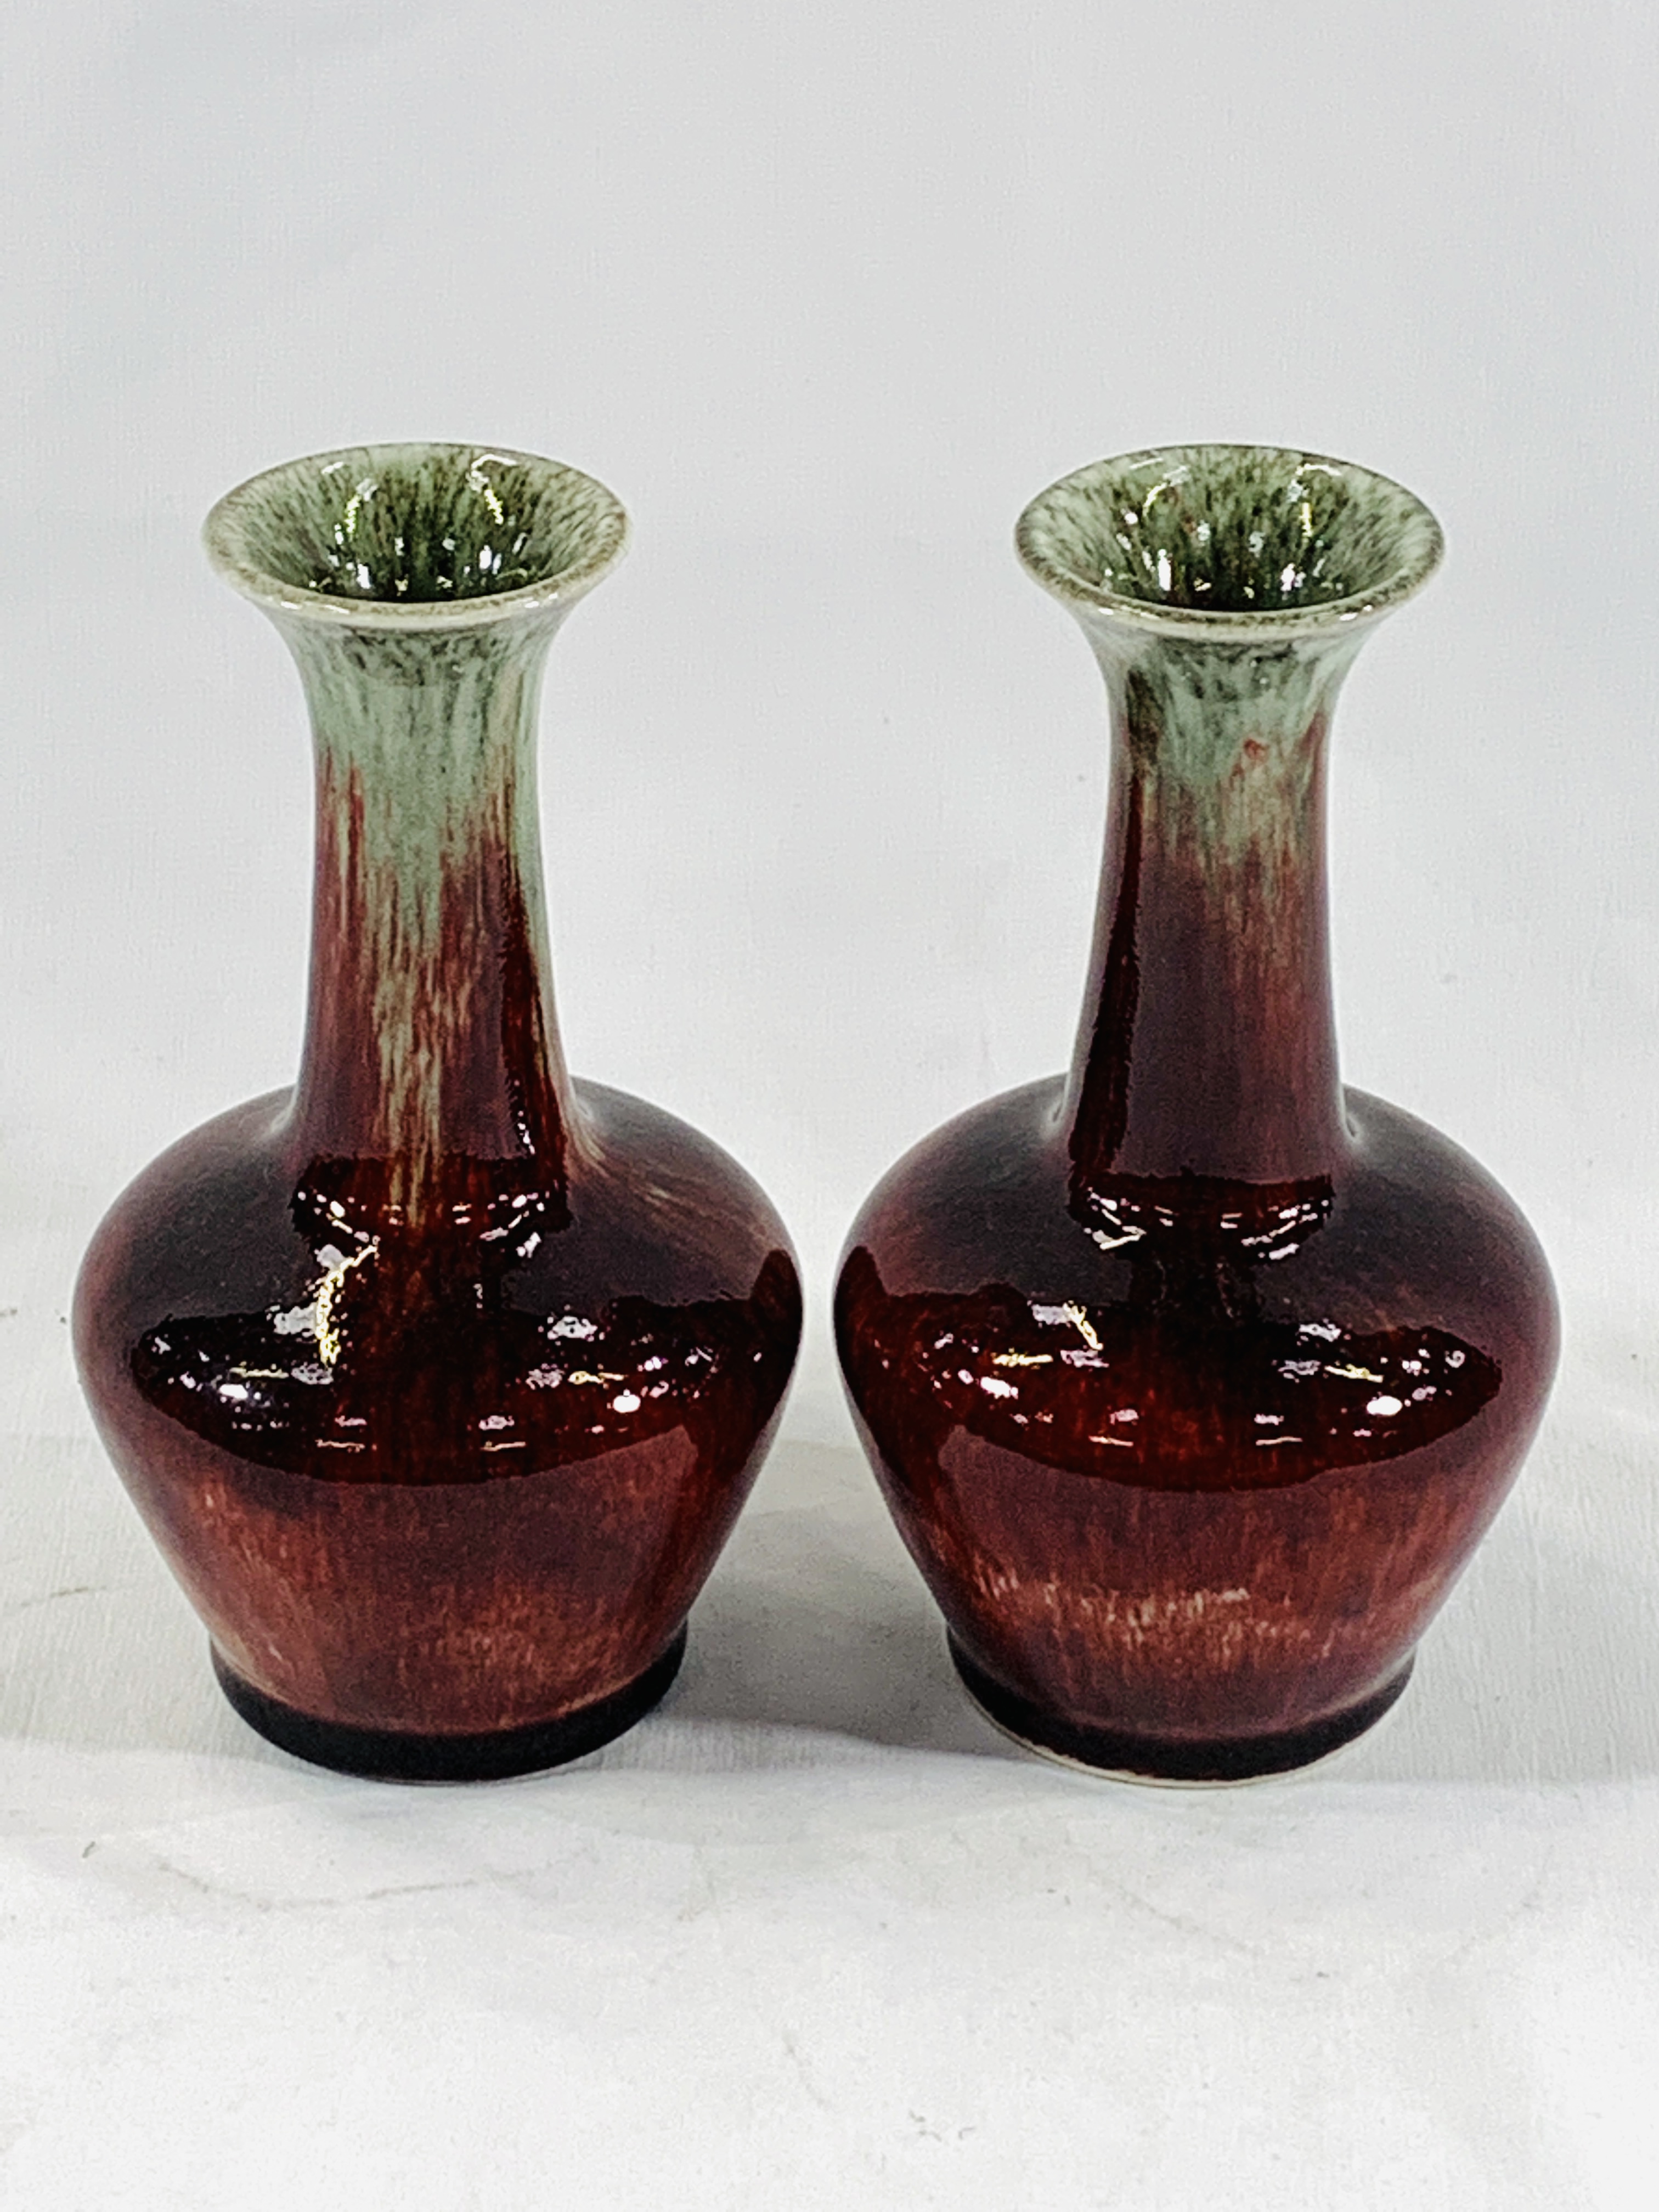 A pair of Cobridge vases